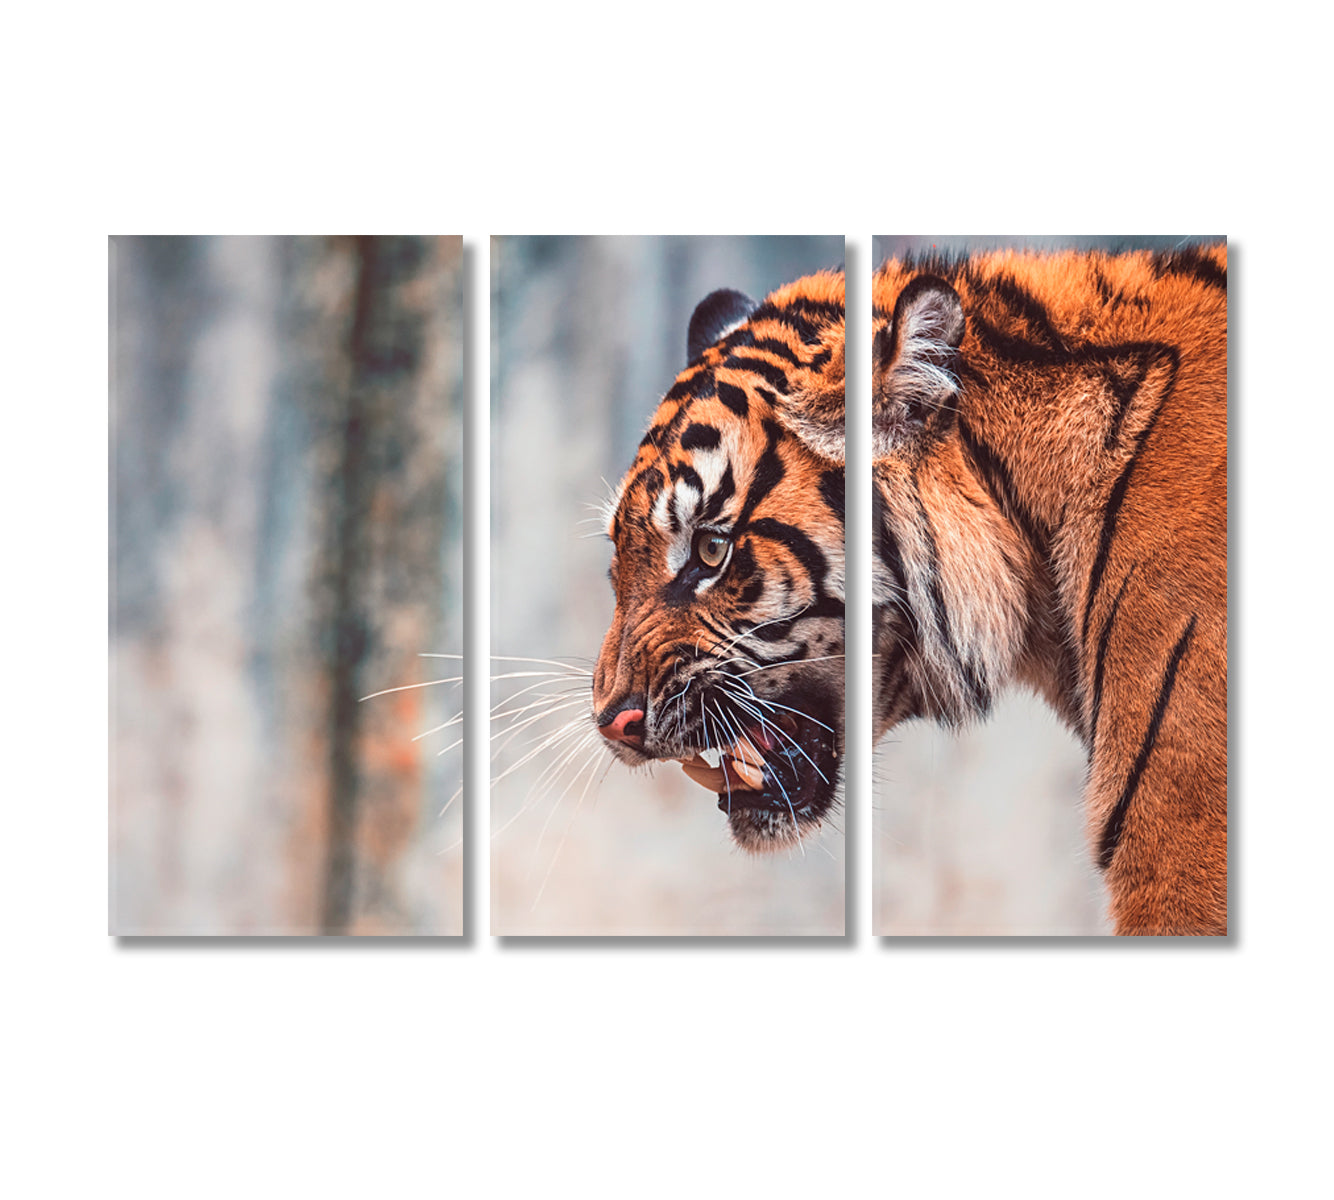 Angry Sumatran Tiger Canvas Print-Canvas Print-CetArt-3 Panels-36x24 inches-CetArt